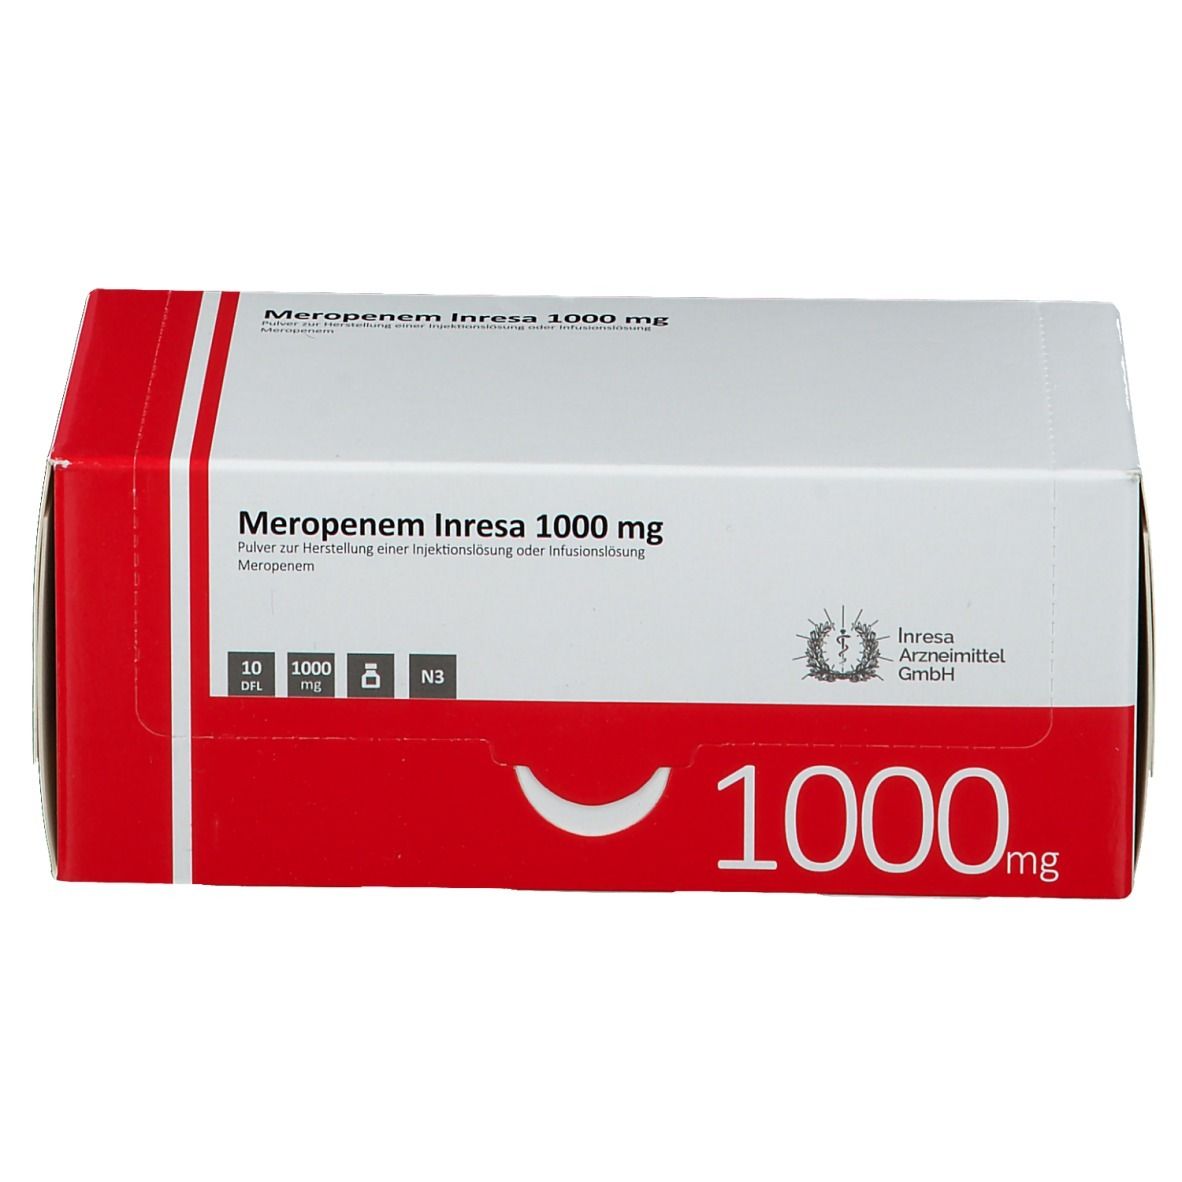 Meropenem Inresa 1000 mg